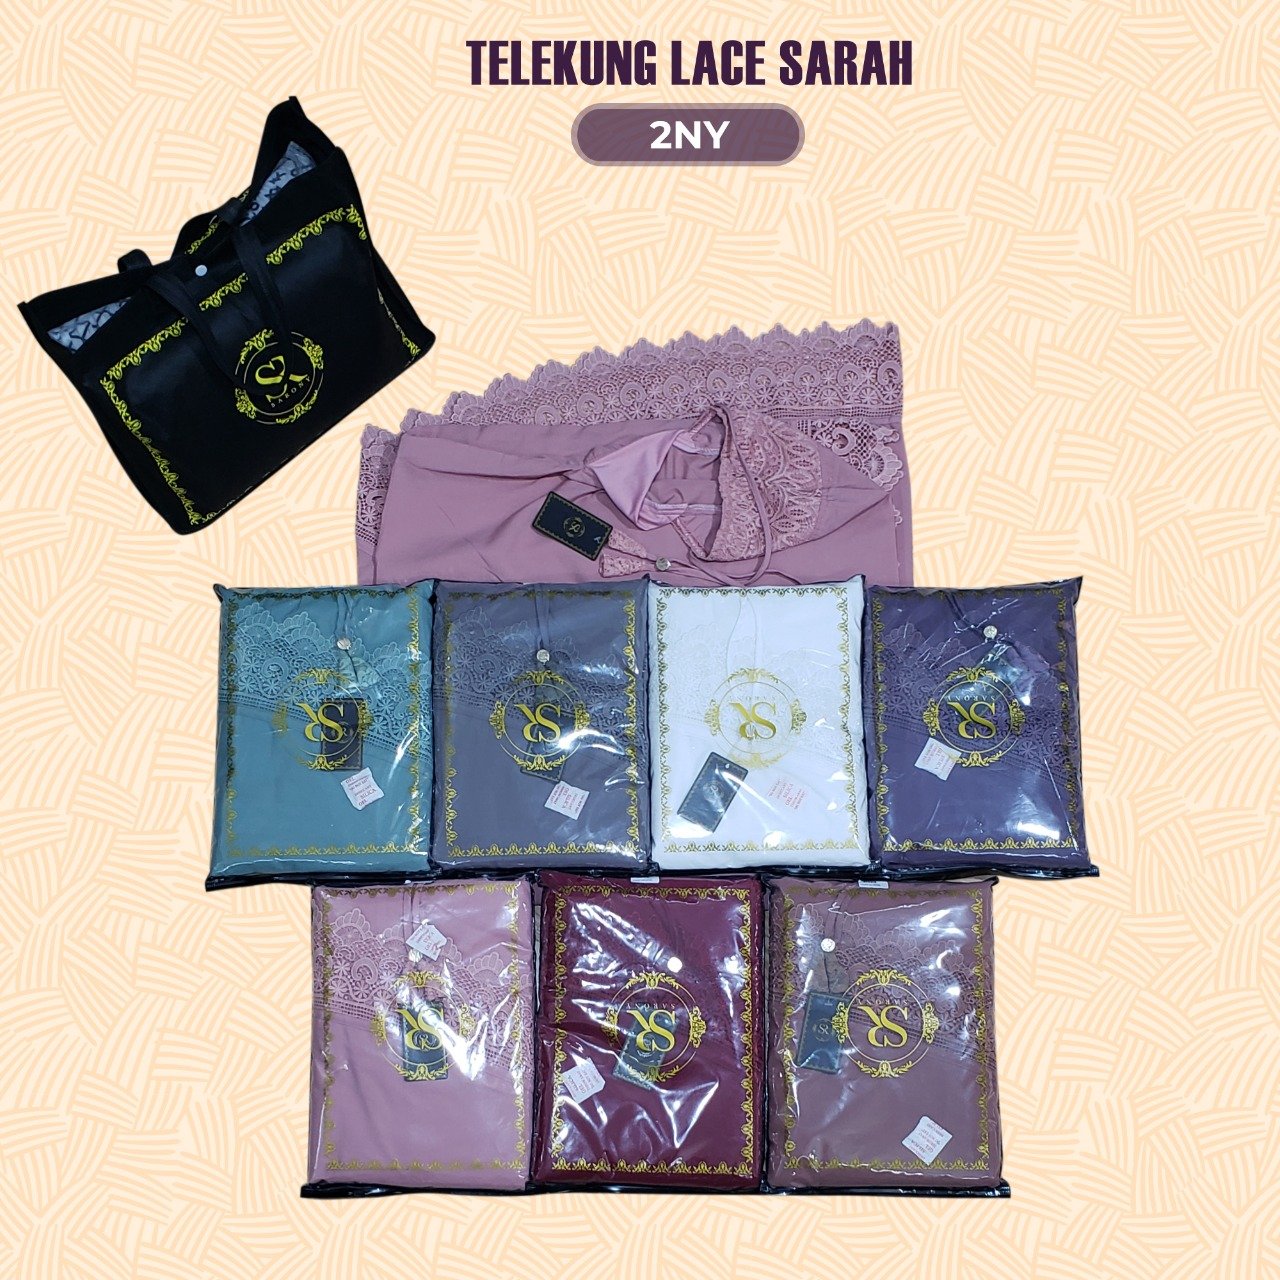 SARONY Telekung Lace Sarah Collection RM29